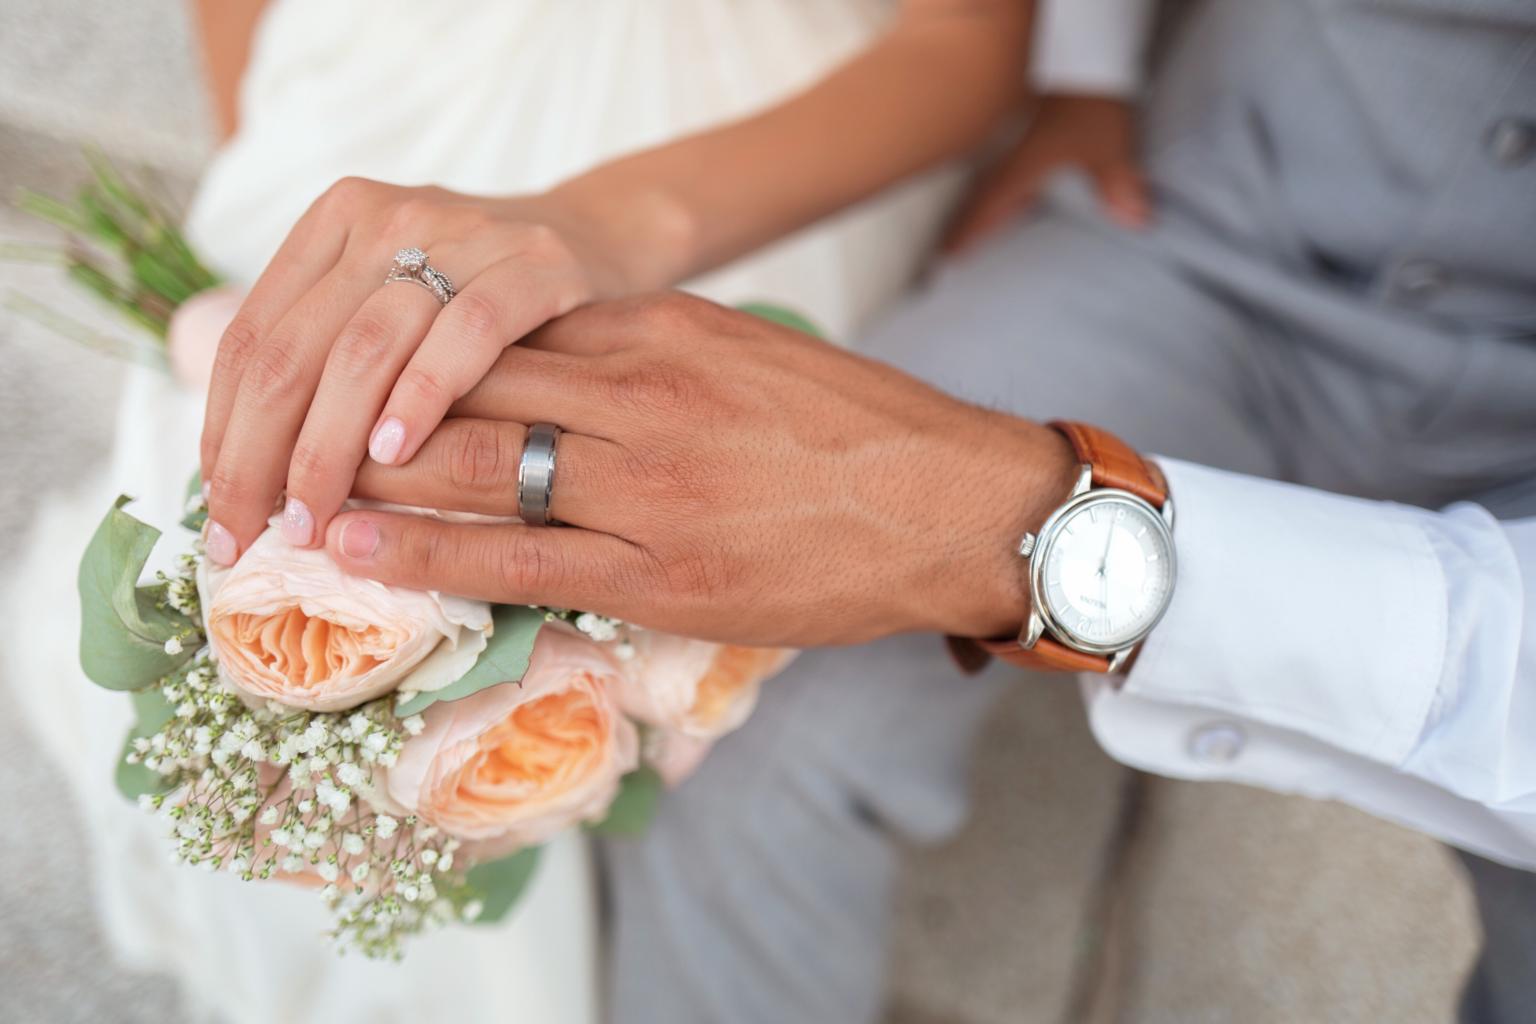 Heiraten (c) Bild von congerdesign auf Pixabay